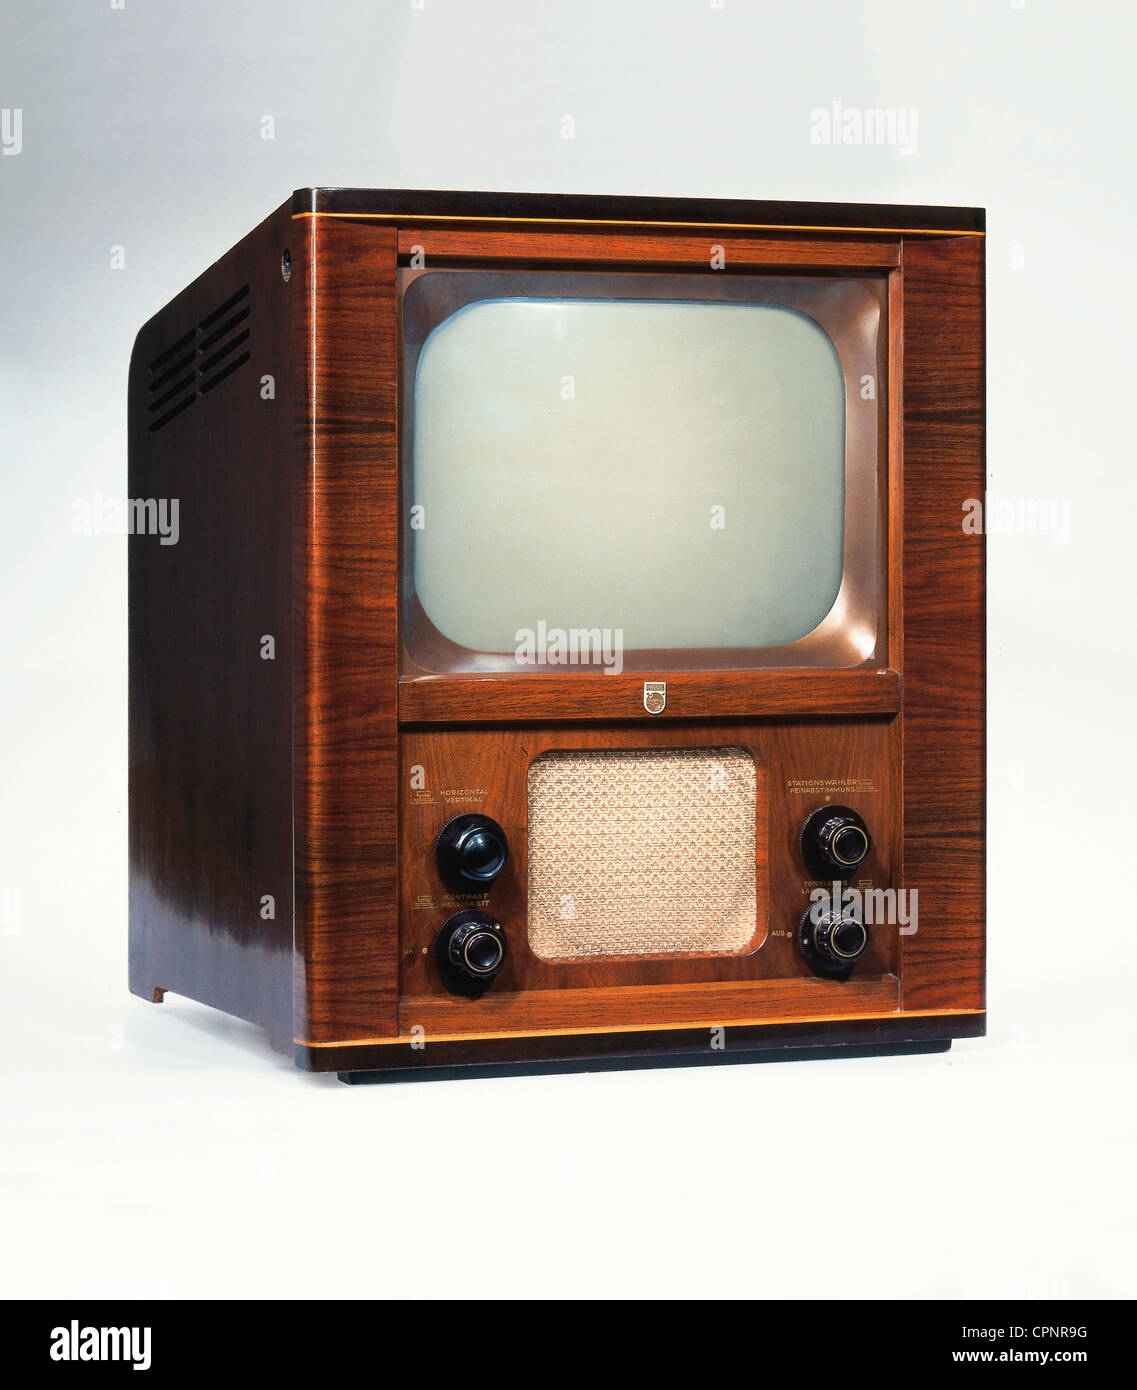 Broadcast, televisione, televisore Philips TD 1410 U, soprannome: Speed trap  (a causa dello stile del telaio), una delle prime unità da tavolo del  dopoguerra, dimensioni dello schermo: 36 centimetri di diagonale, prezzo